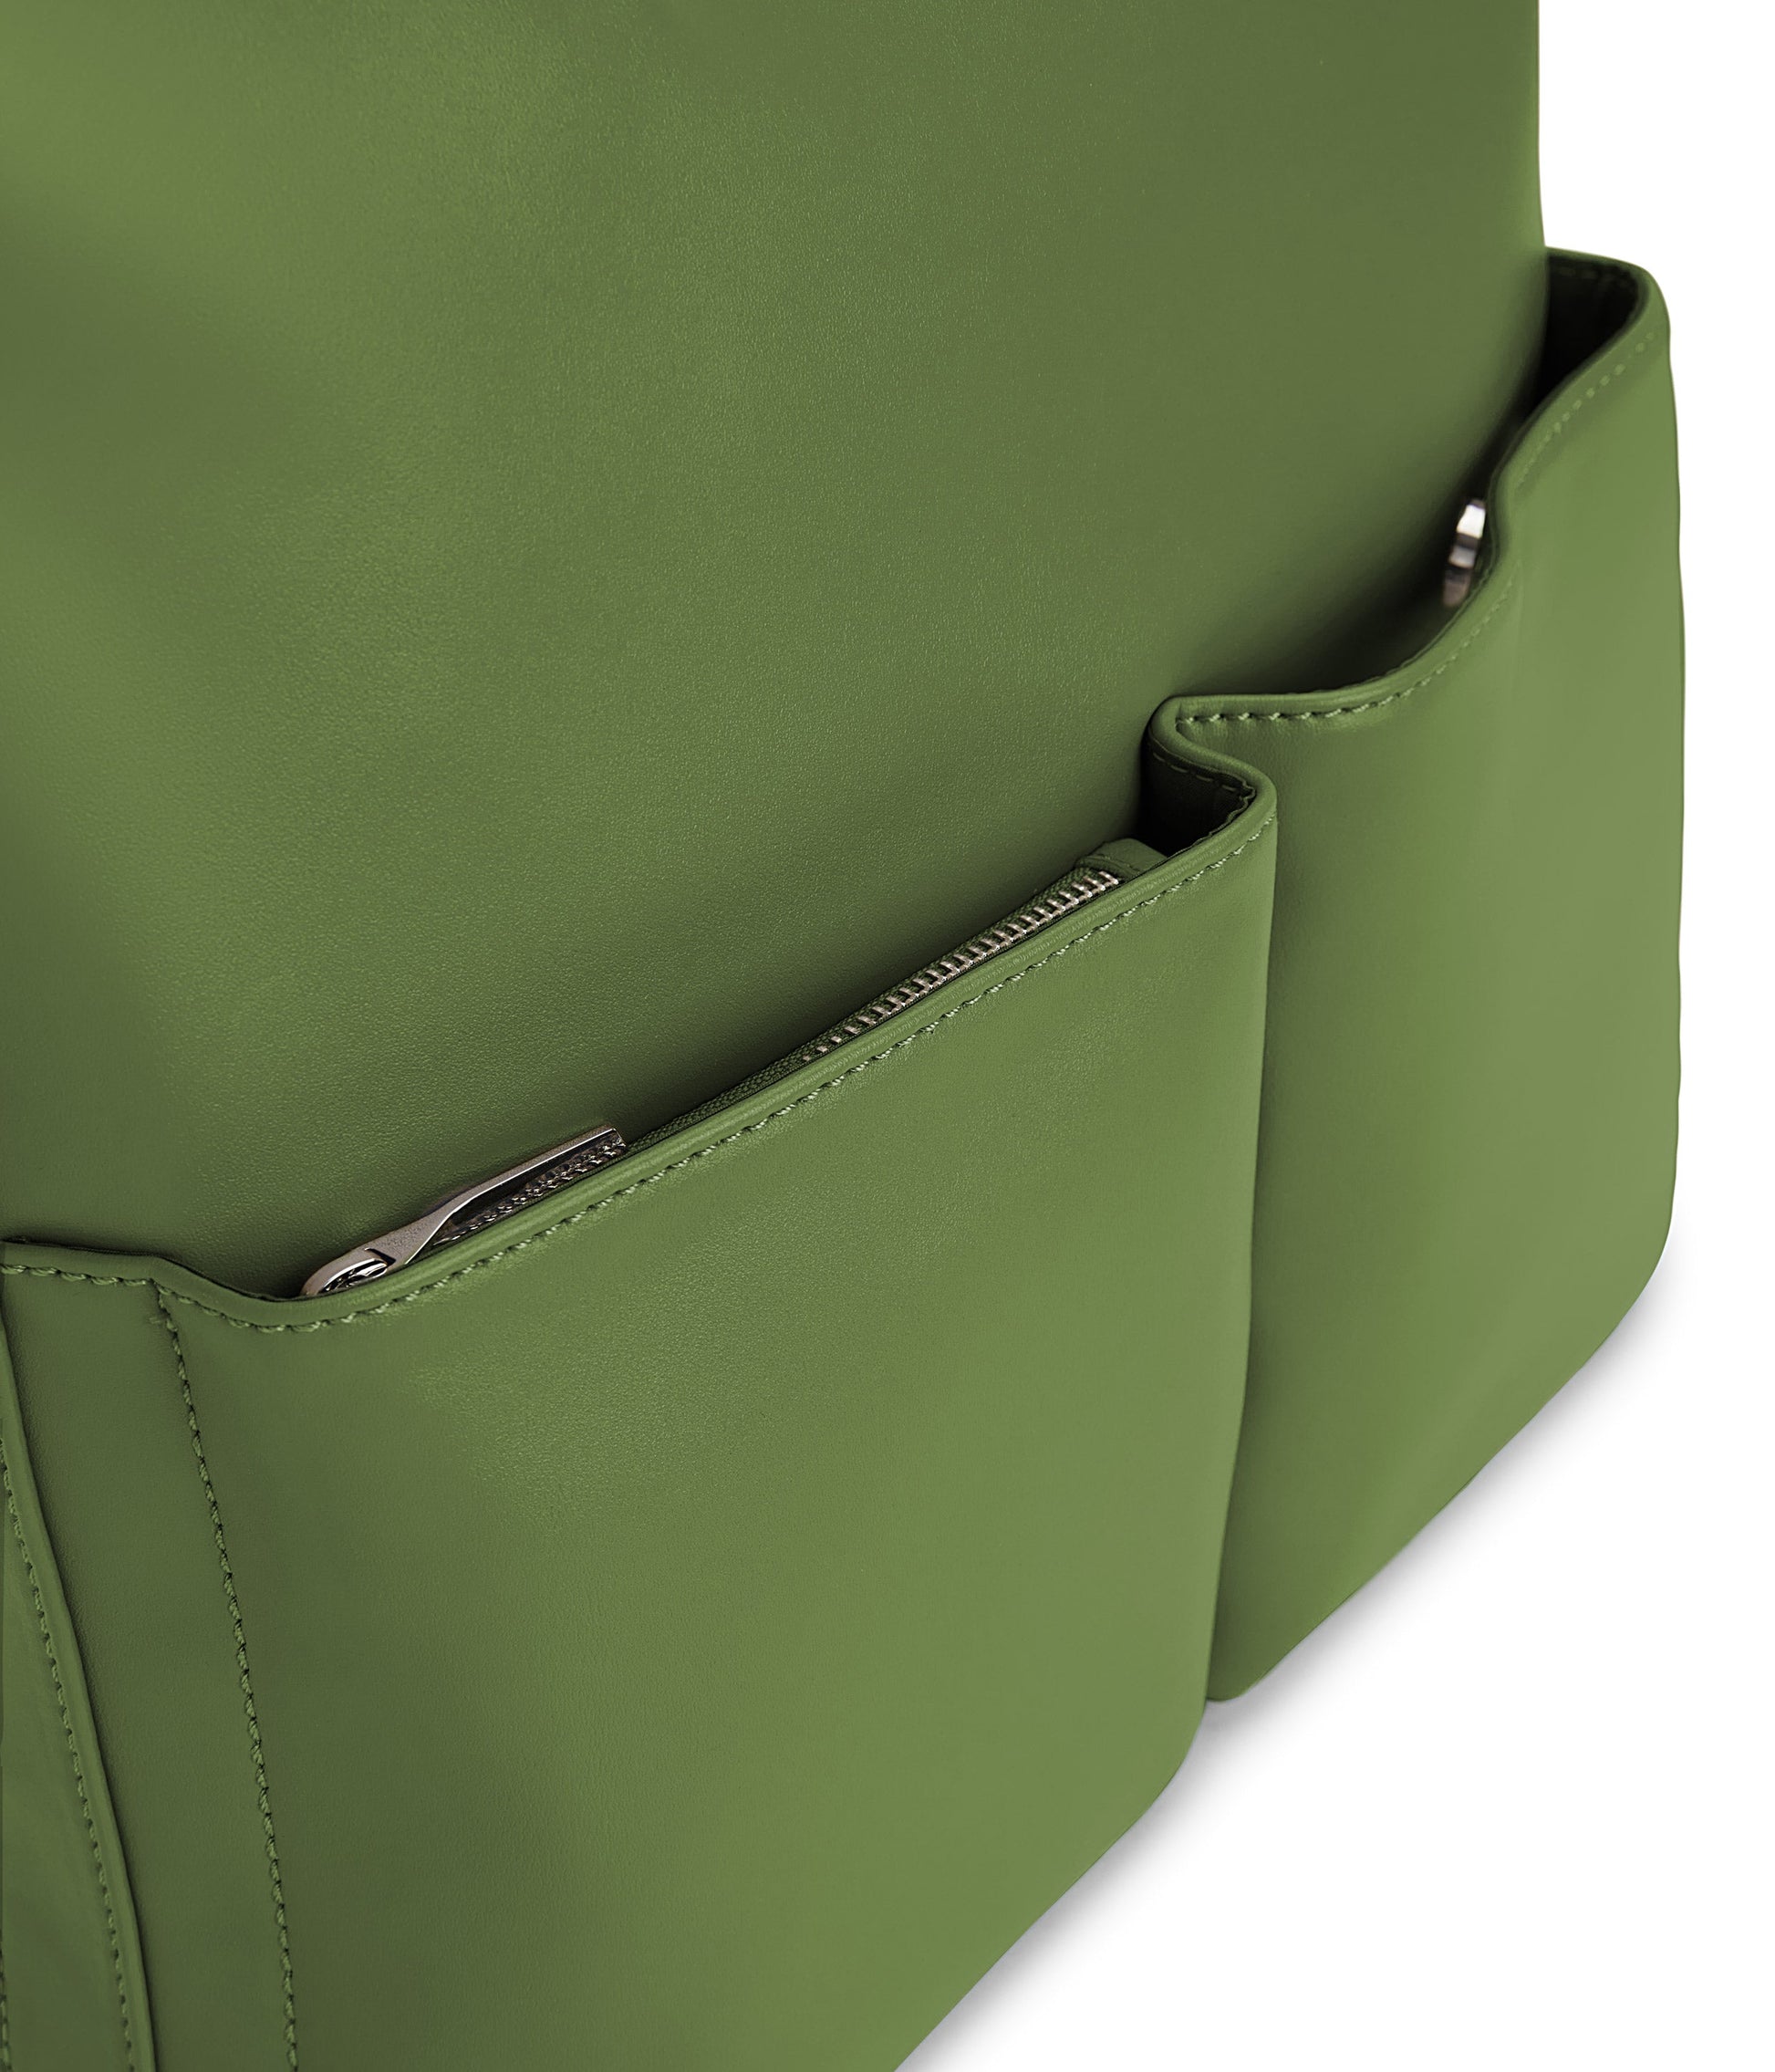 BERTA Vegan Tote Bag - Loom | Color: Green - variant::parrot